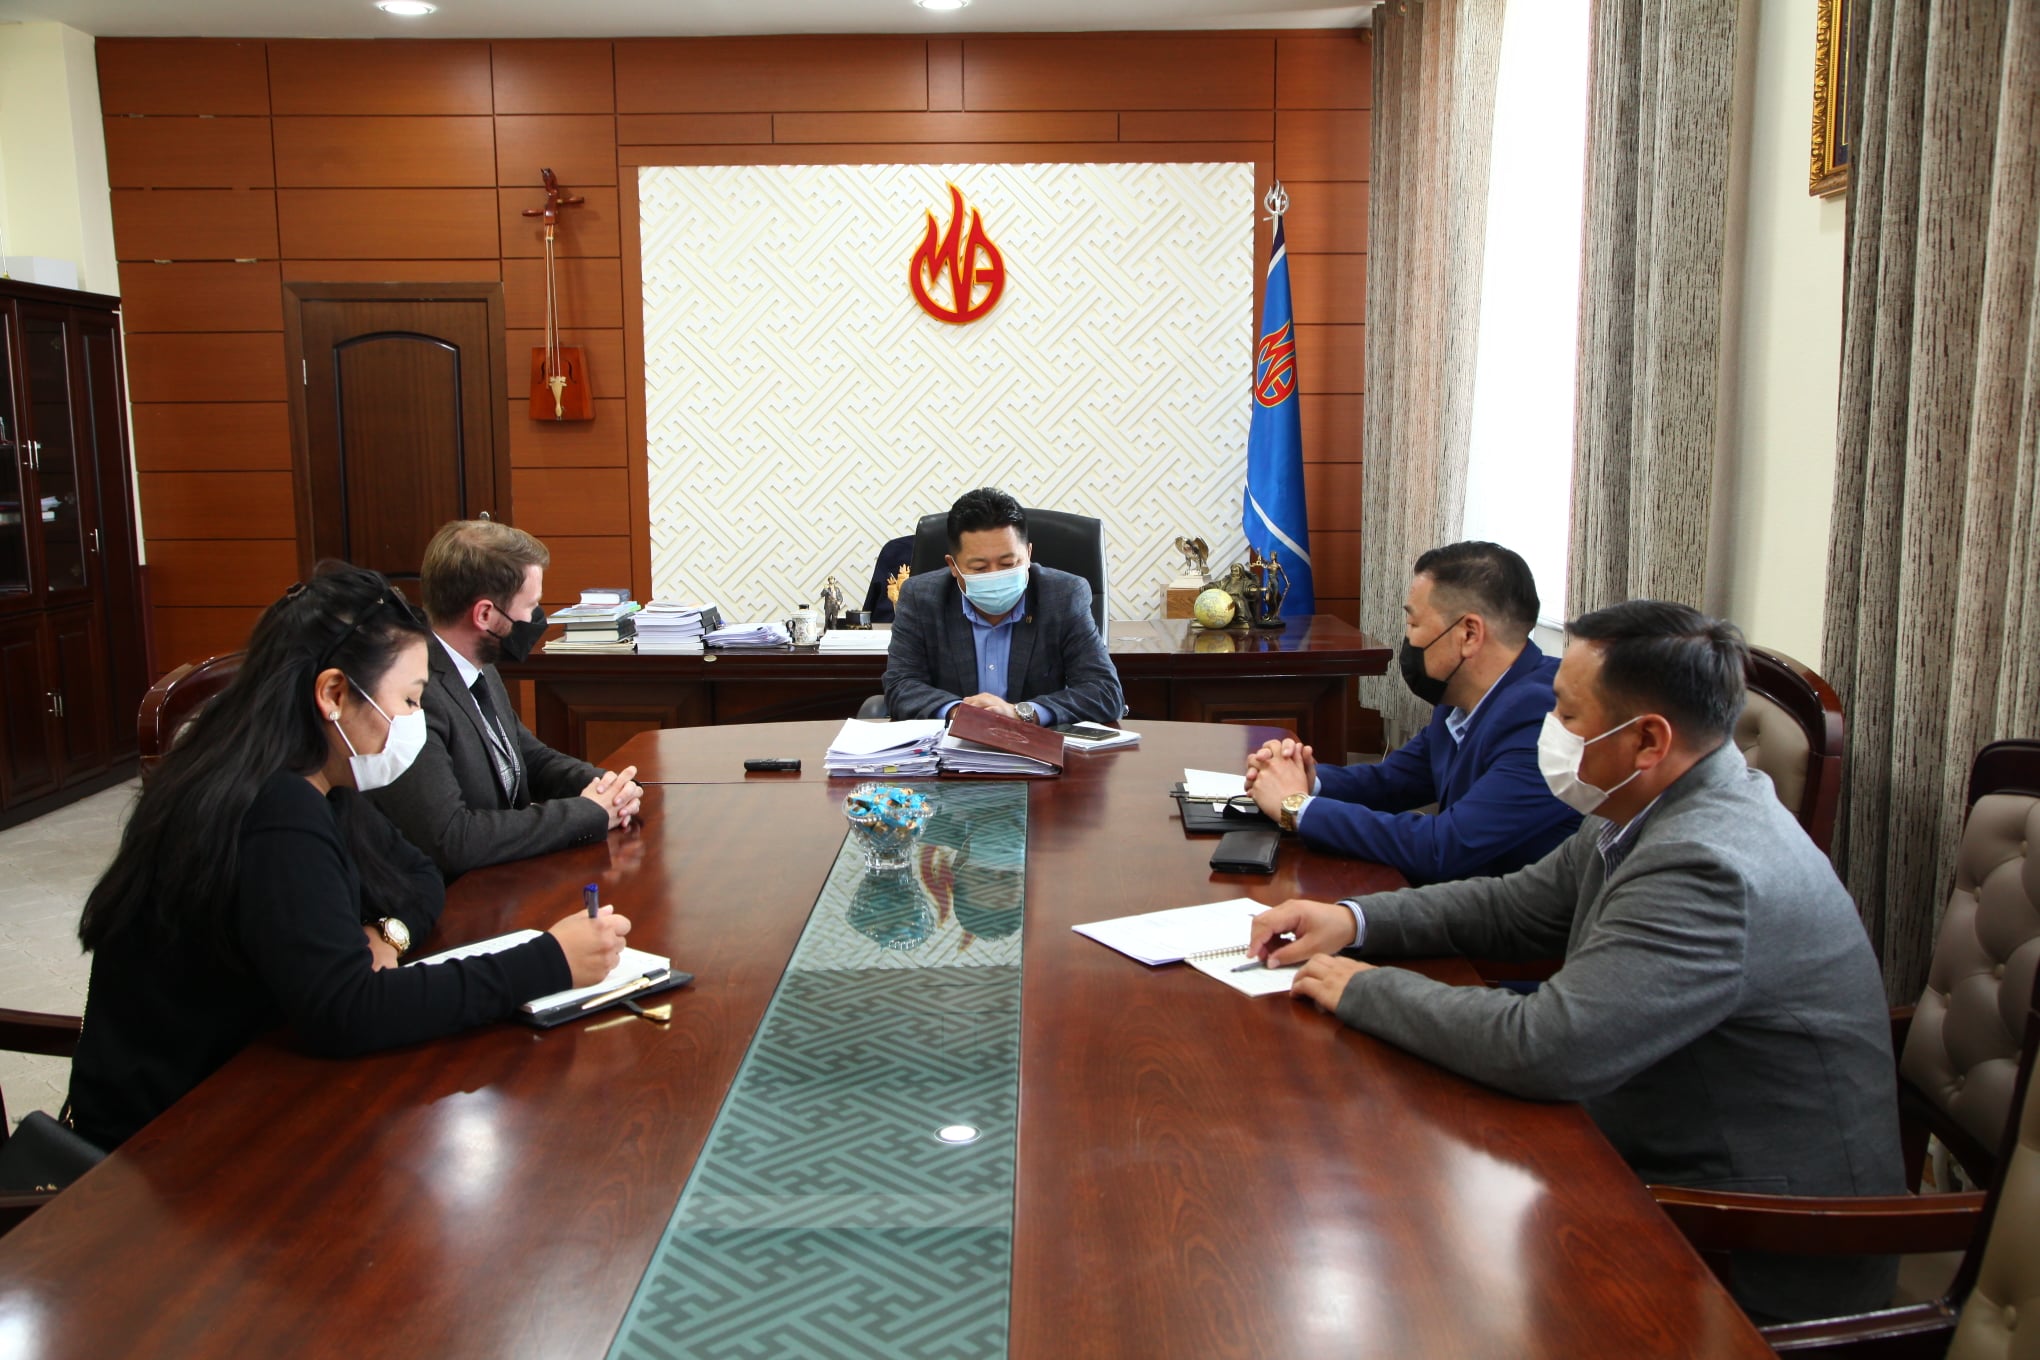 ФЭС-ийн Монгол дахь суурин төлөөлөгч МҮЭХ-ны удирдлагуудтай уулзлаа